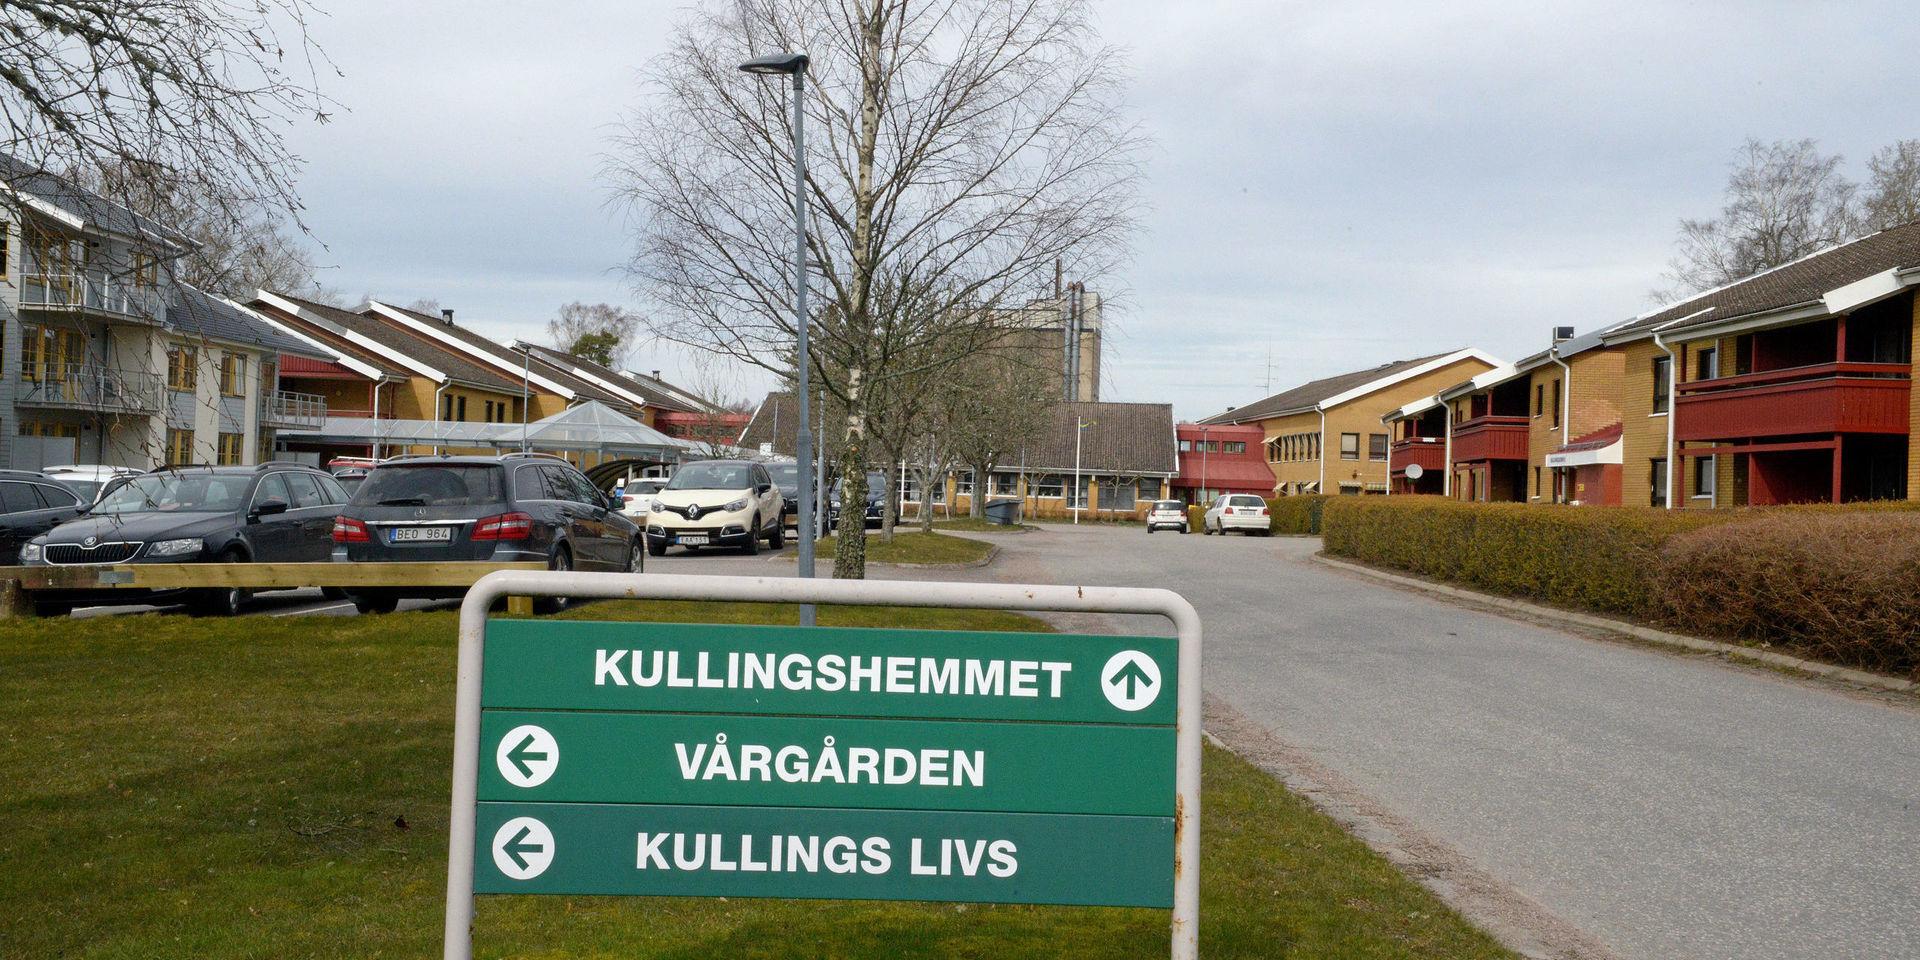 18 personer är för närvarande sjuka i covid-19 på Kullingshemmet. Det är det största utbrottet hittills inom äldreomsorgen i Vårgårda.